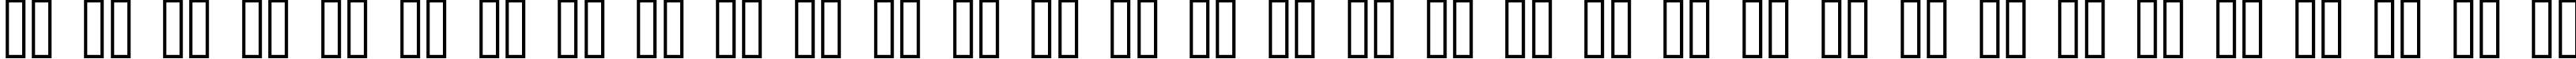 Пример написания русского алфавита шрифтом kroeger 06_55